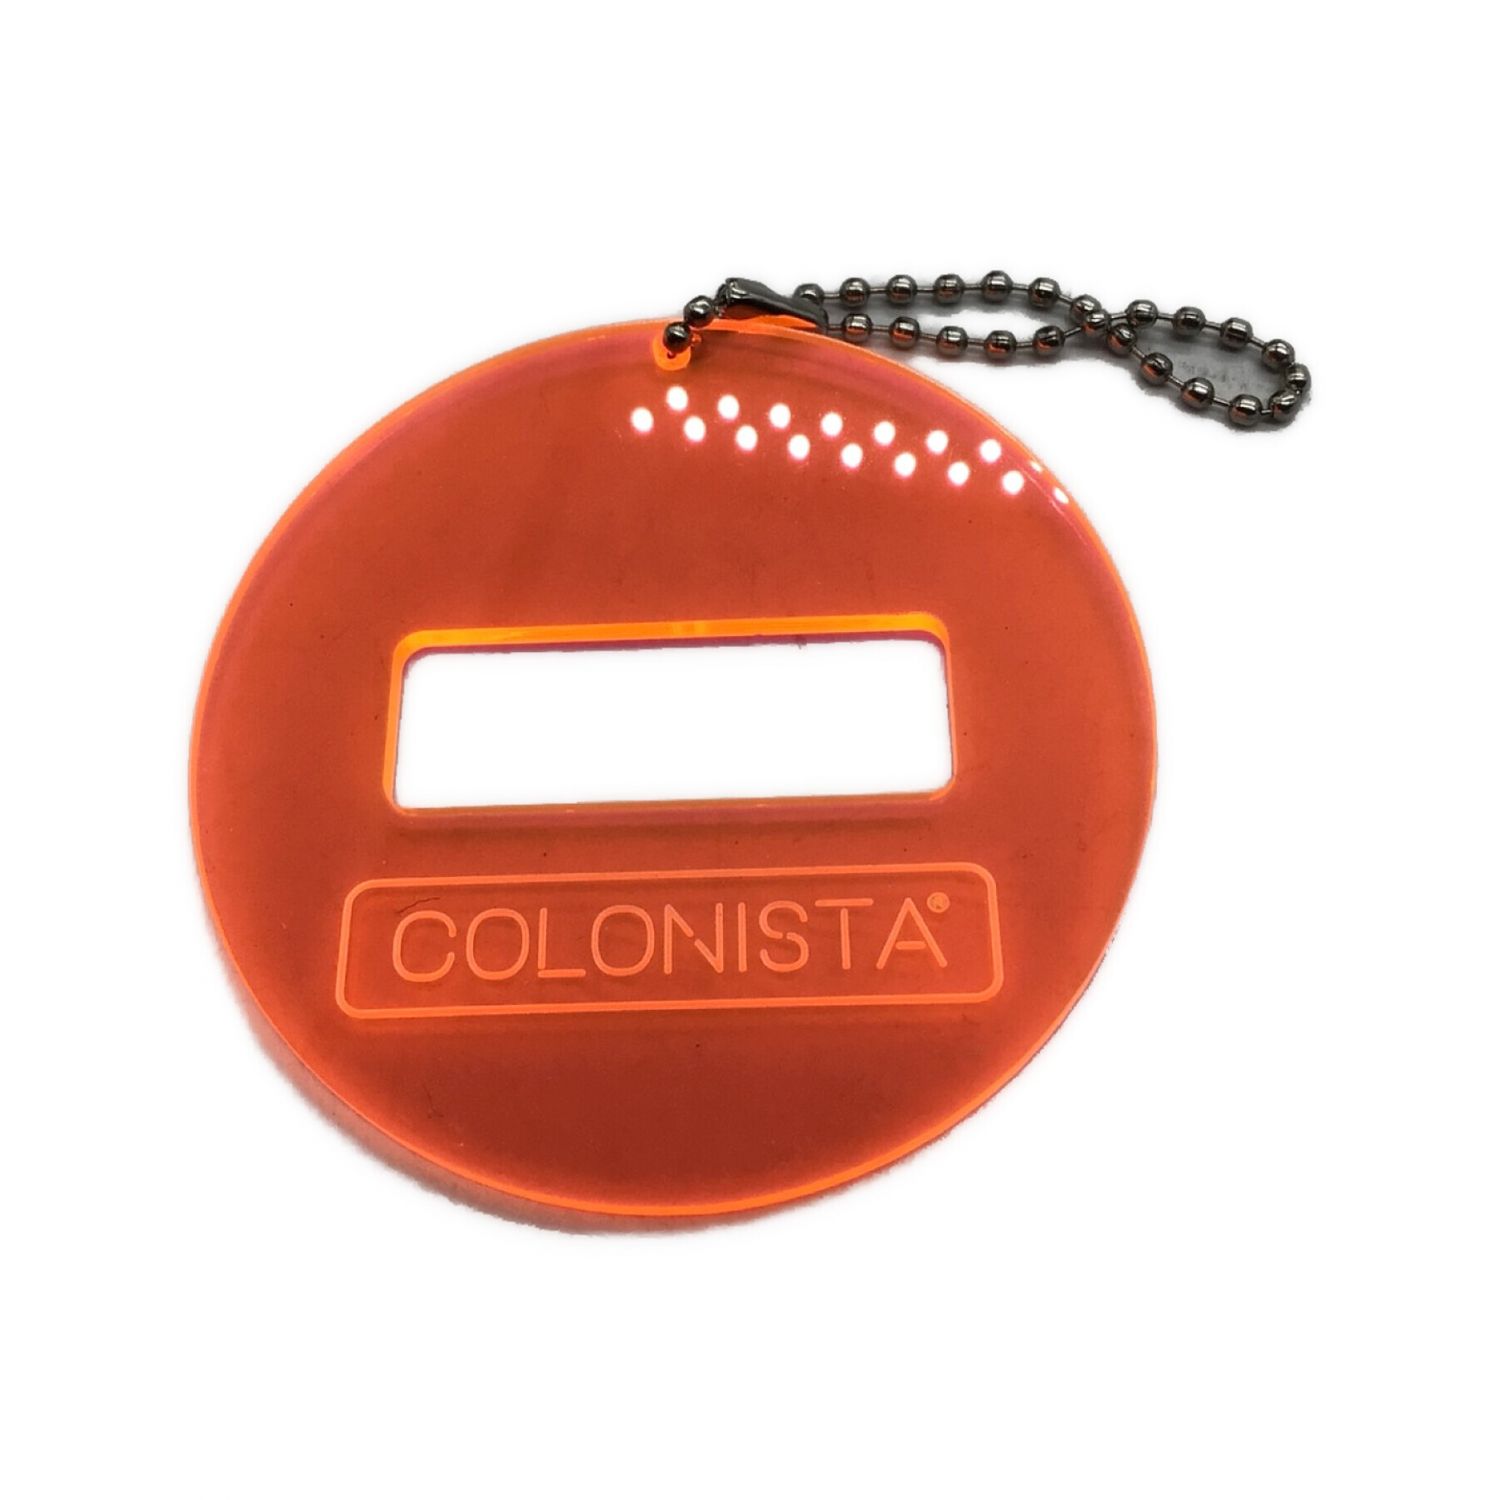 COLONISTA (コロニスタ) OMAN10 ブラック×オレンジ プレート付